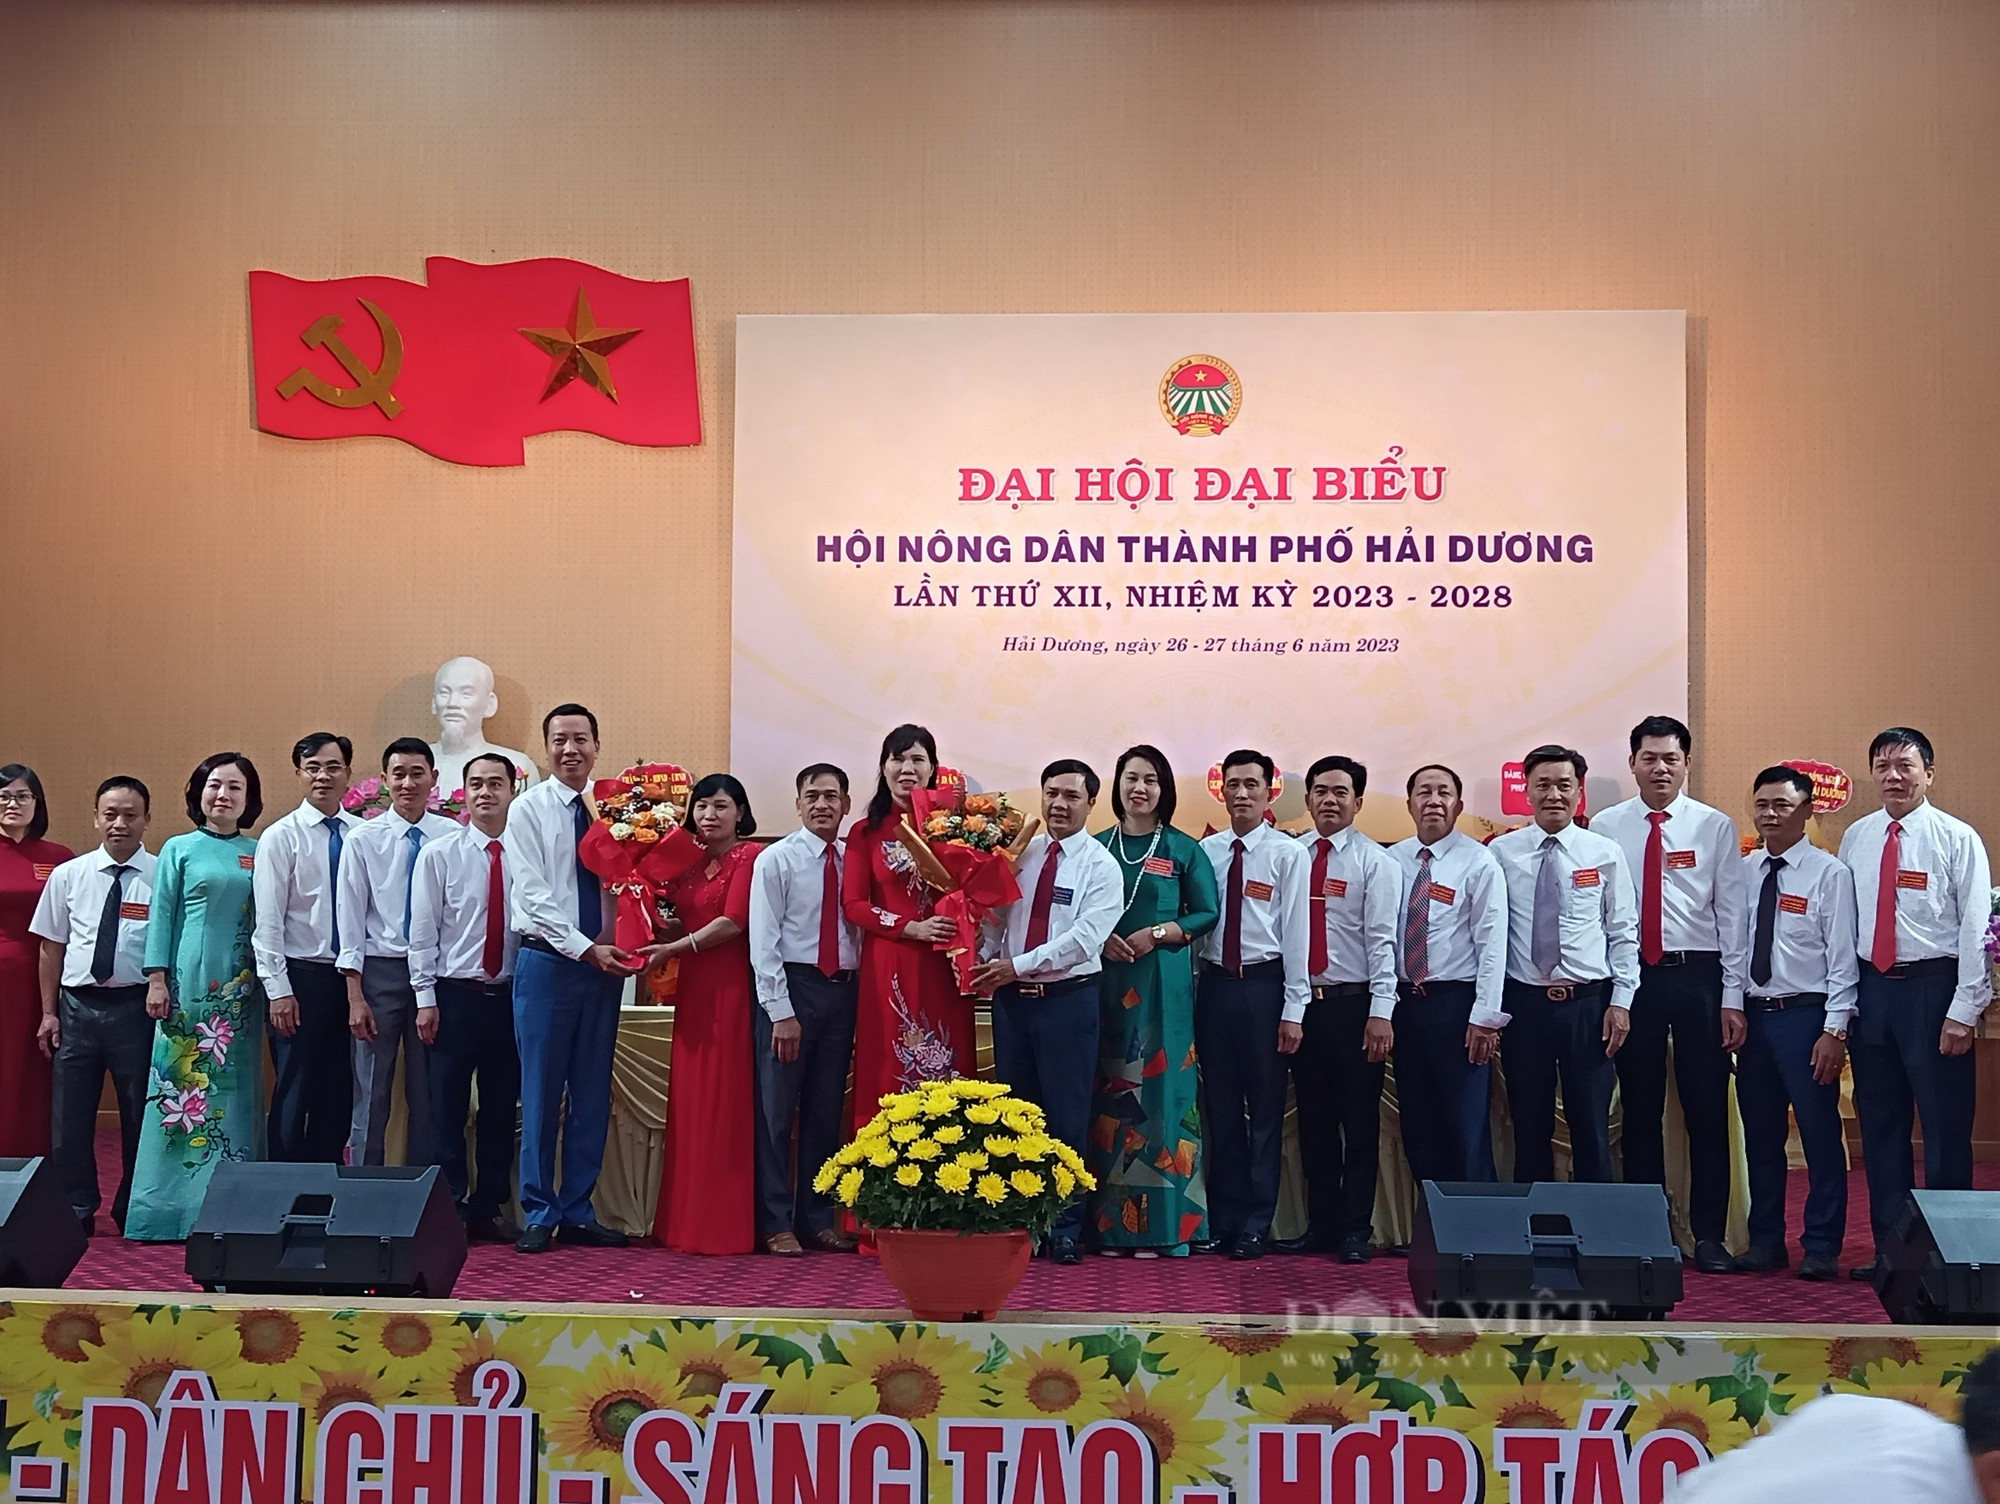 Đại hội Đại biểu Hội nông dân TP Hải Dương, bà Nguyễn Hải Yến tái đắc cử chức Chủ tịch - Ảnh 7.